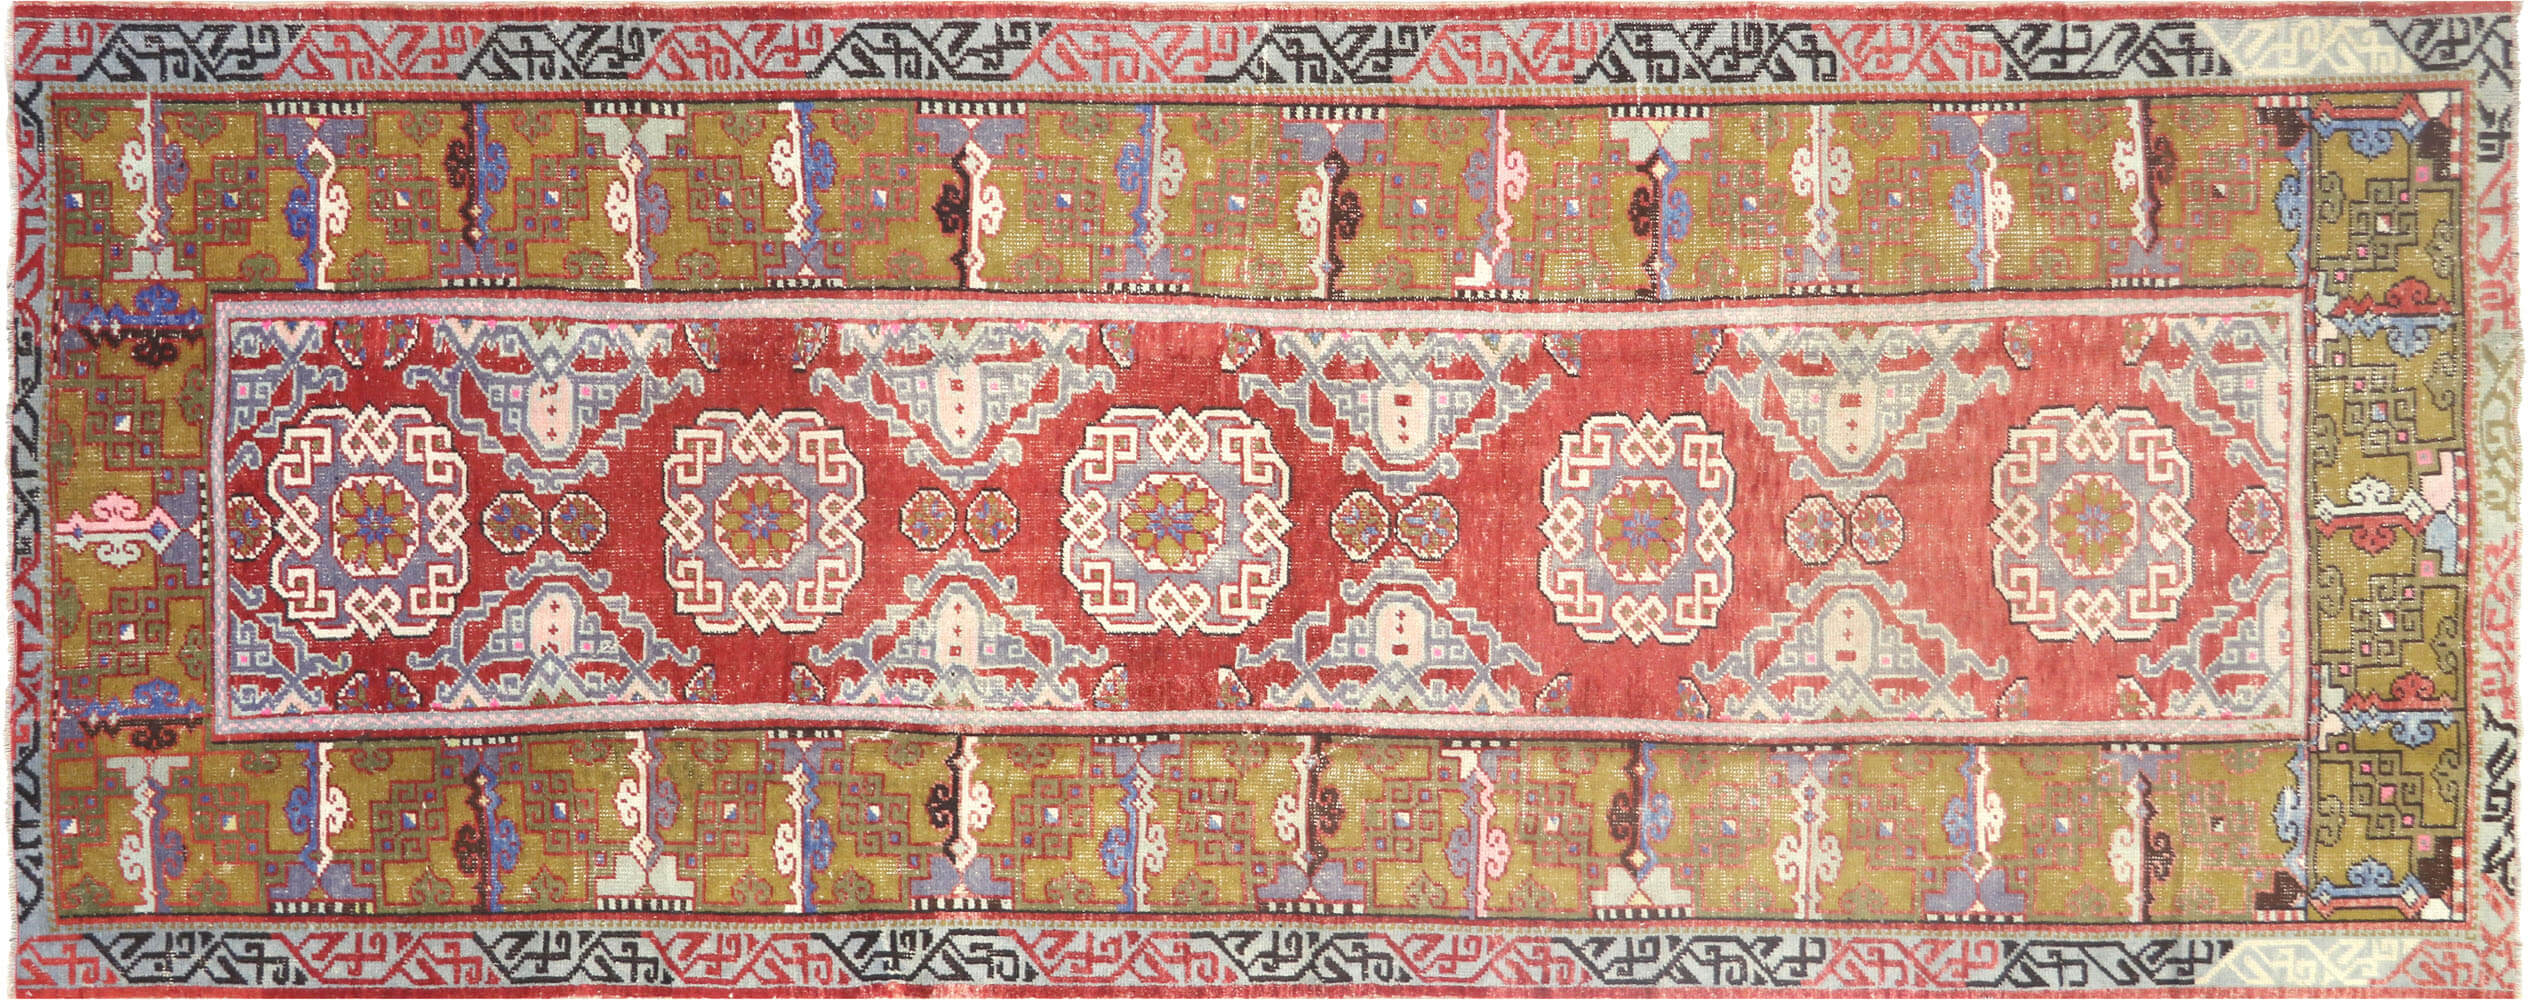 Vintage Turkish Oushak Carpet - 4'6" x 11'4"